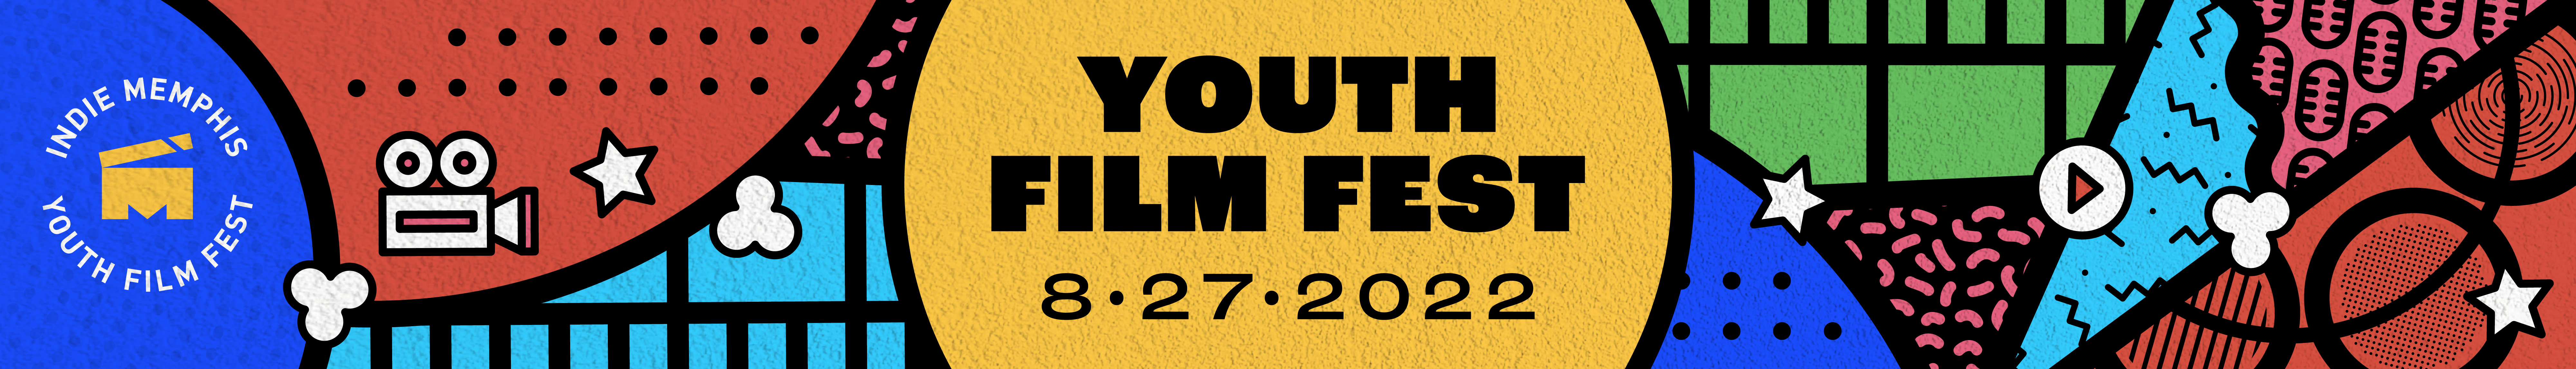 Indie Memphis Youth Film Fest Virtual Screenings